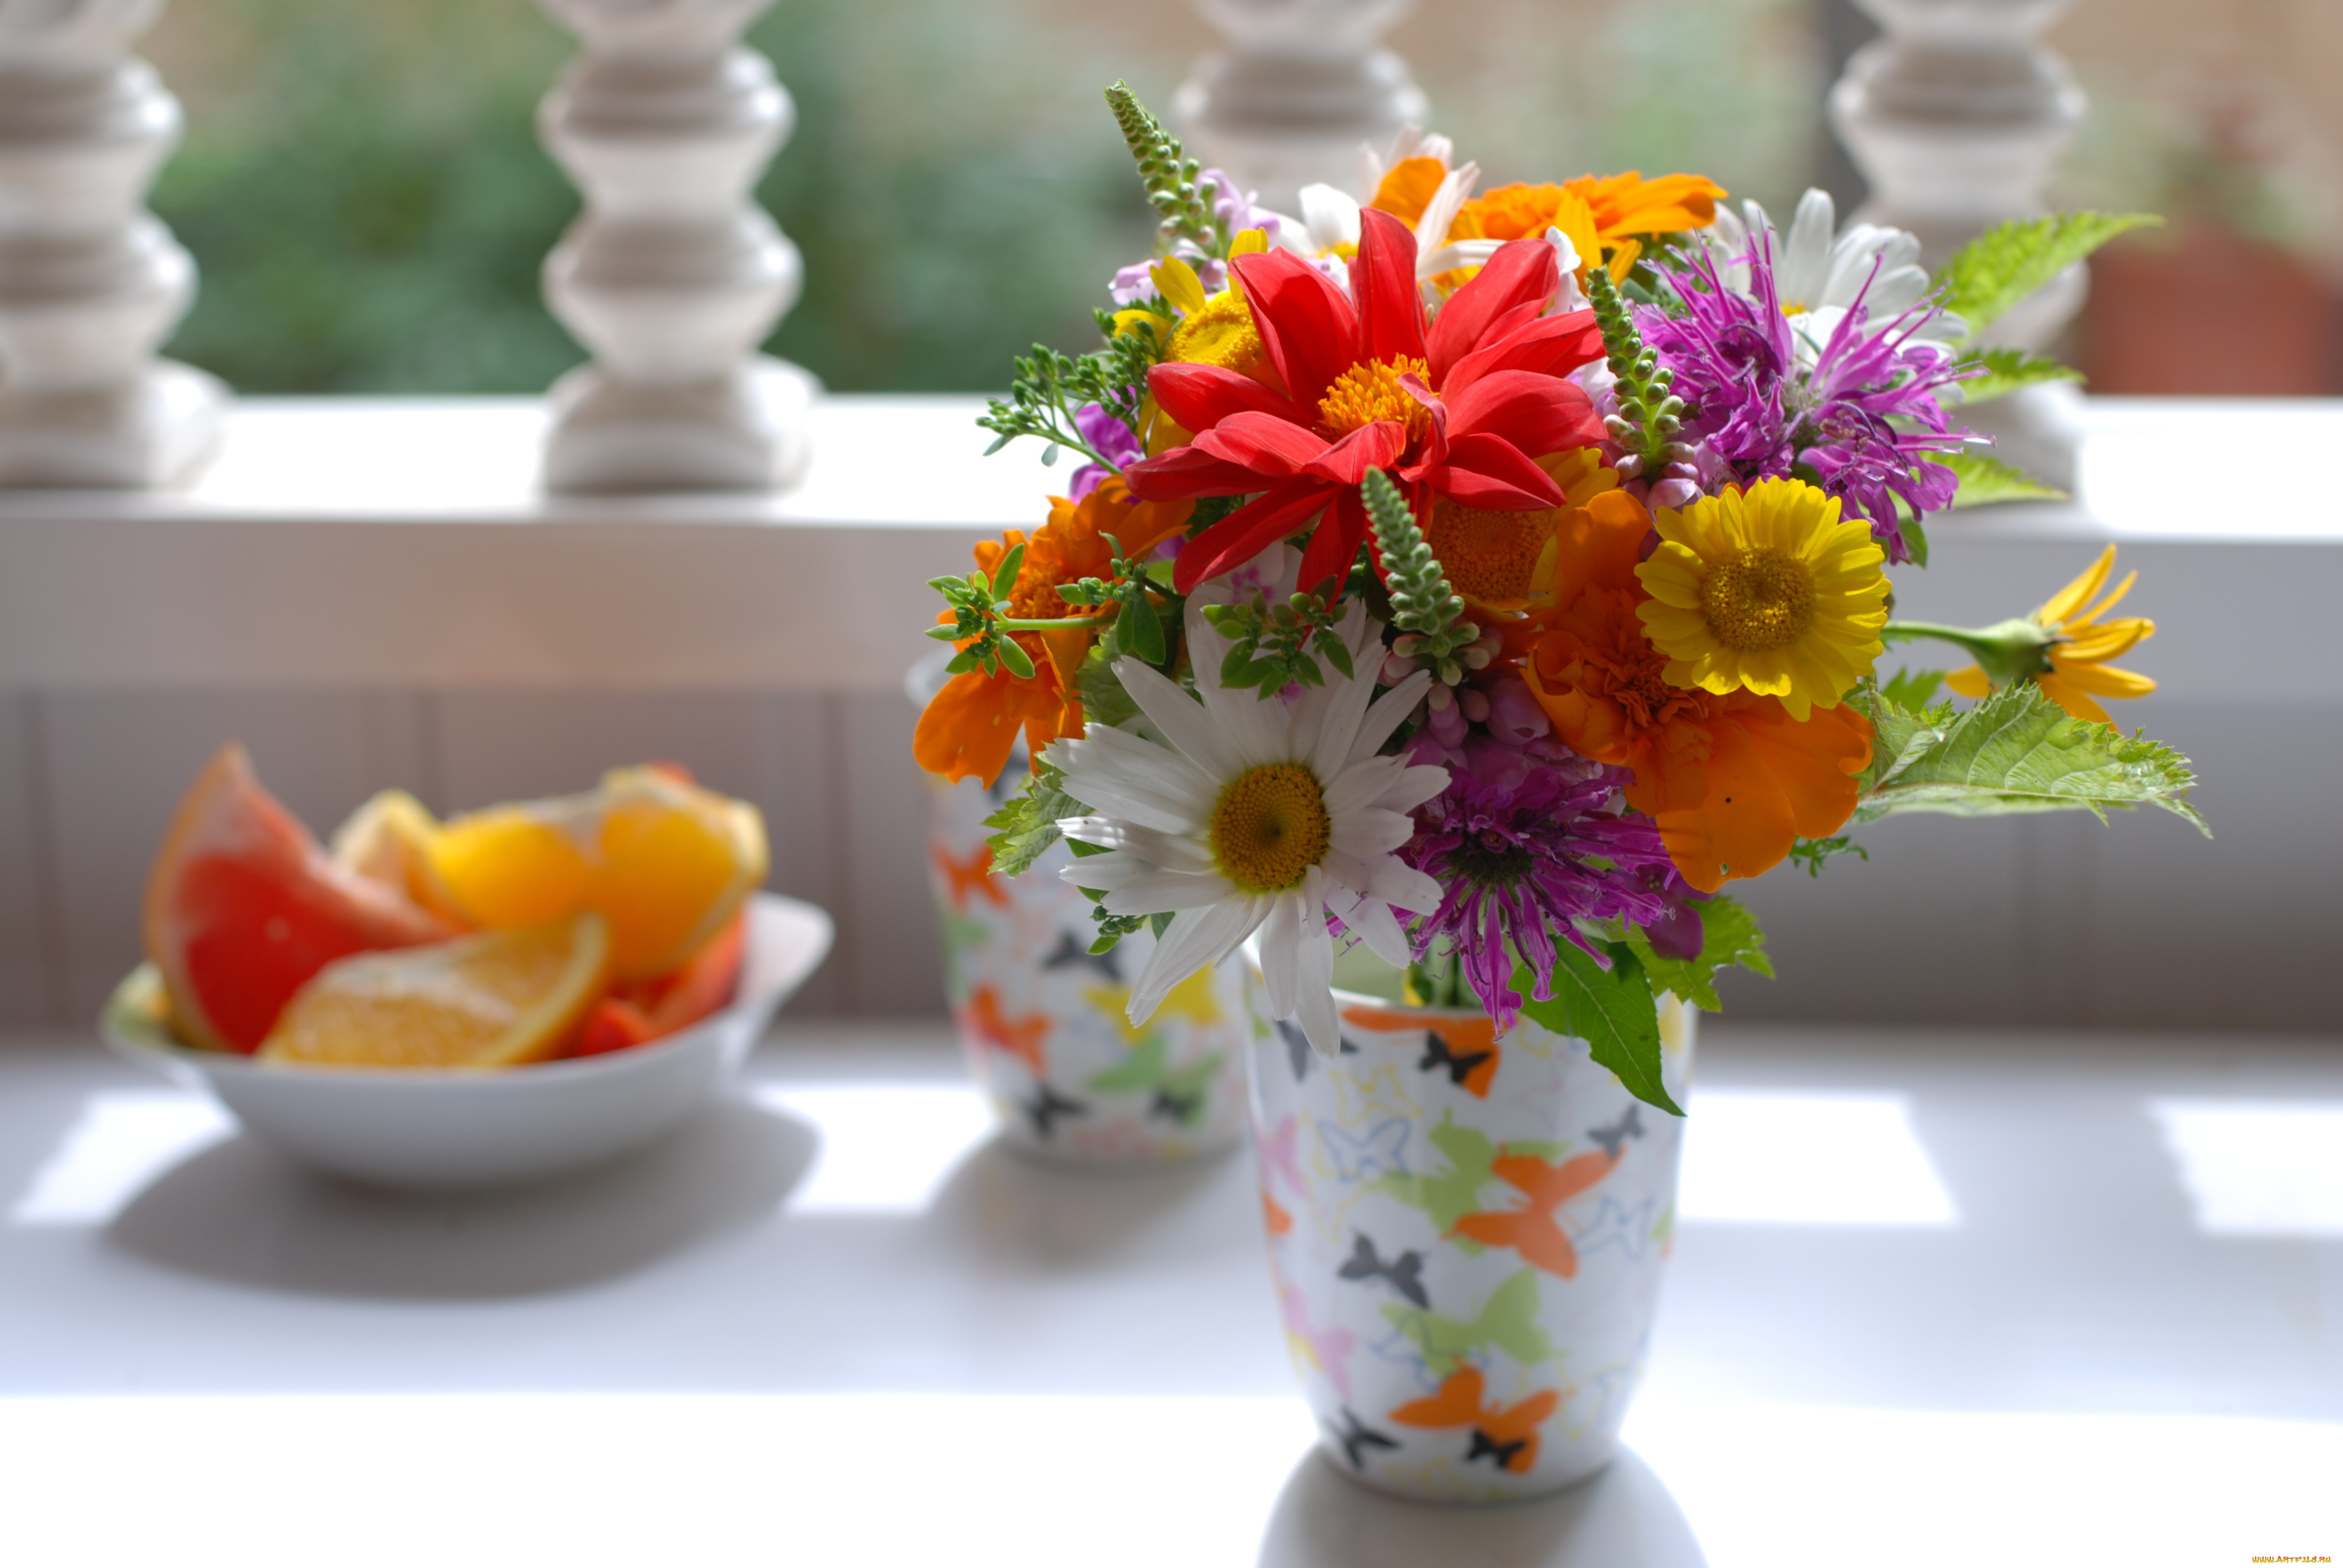 Картинка с цветами на столе. Летние цветы. Яркие цветы. Букеты в вазах. Цветочки в вазе.